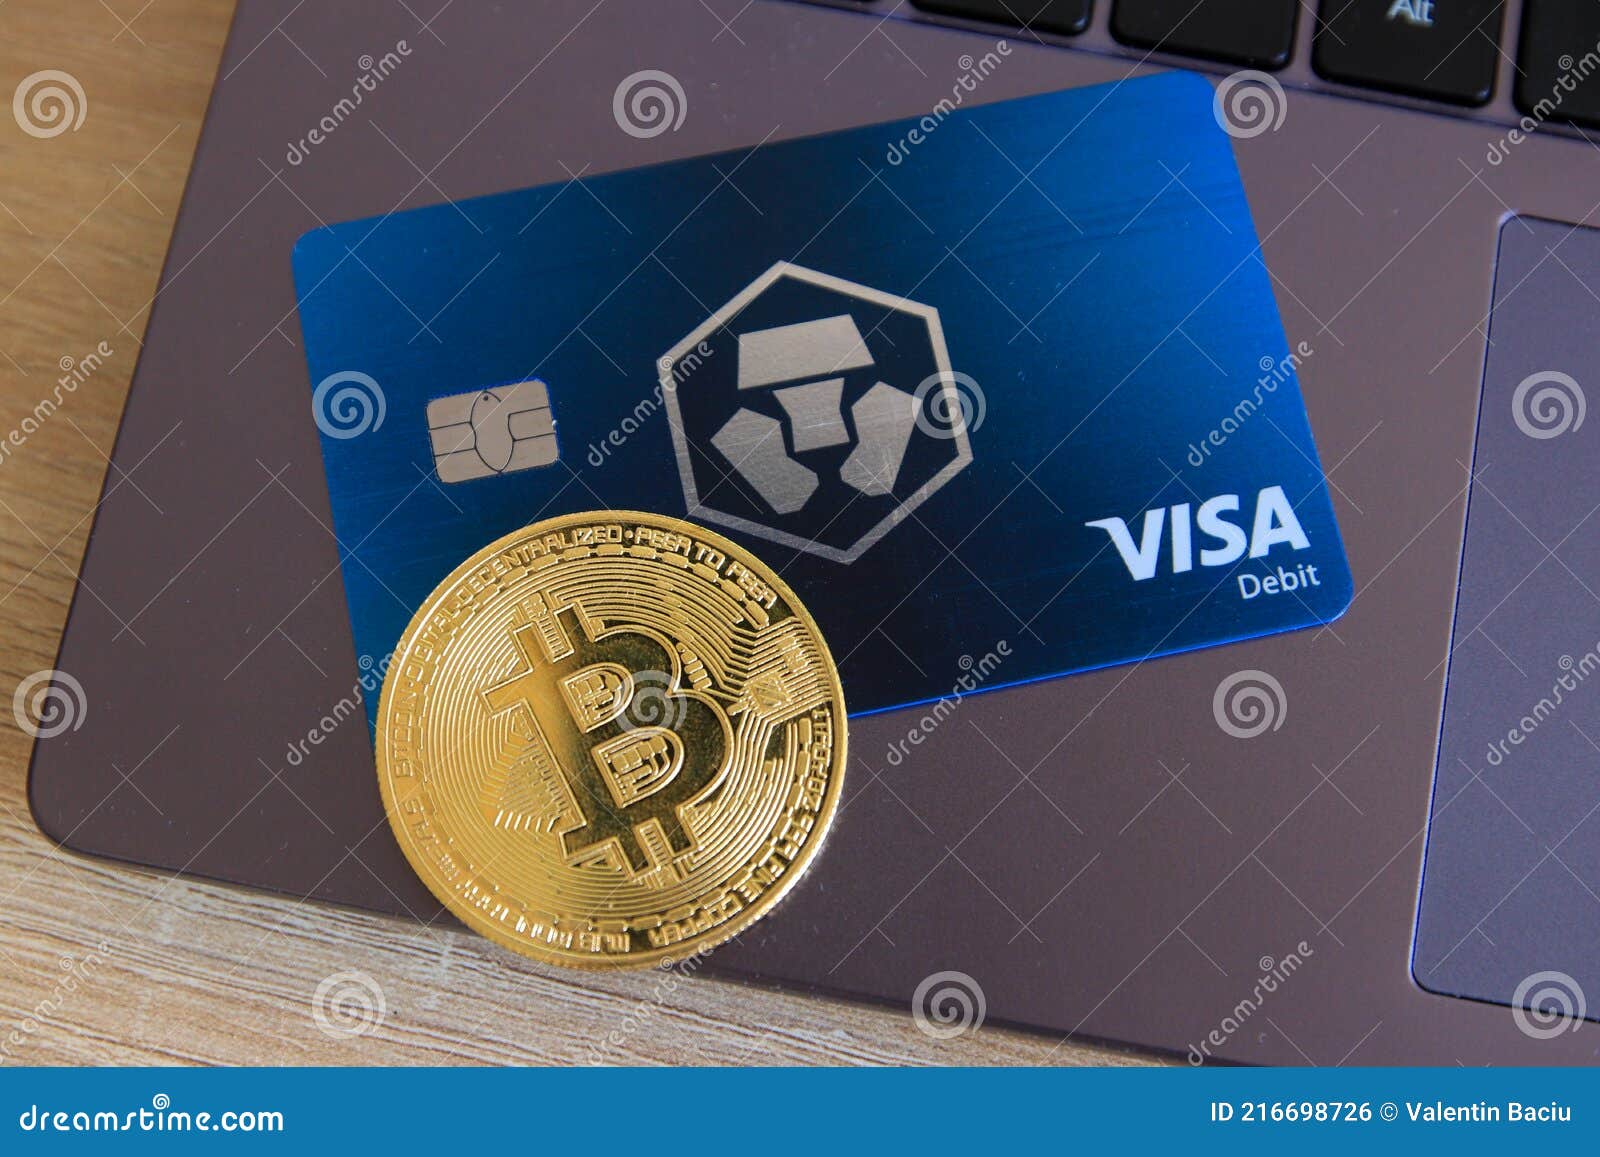 Crypto.com Card after 180 days | Do you get Crypto COM card after 180 days?